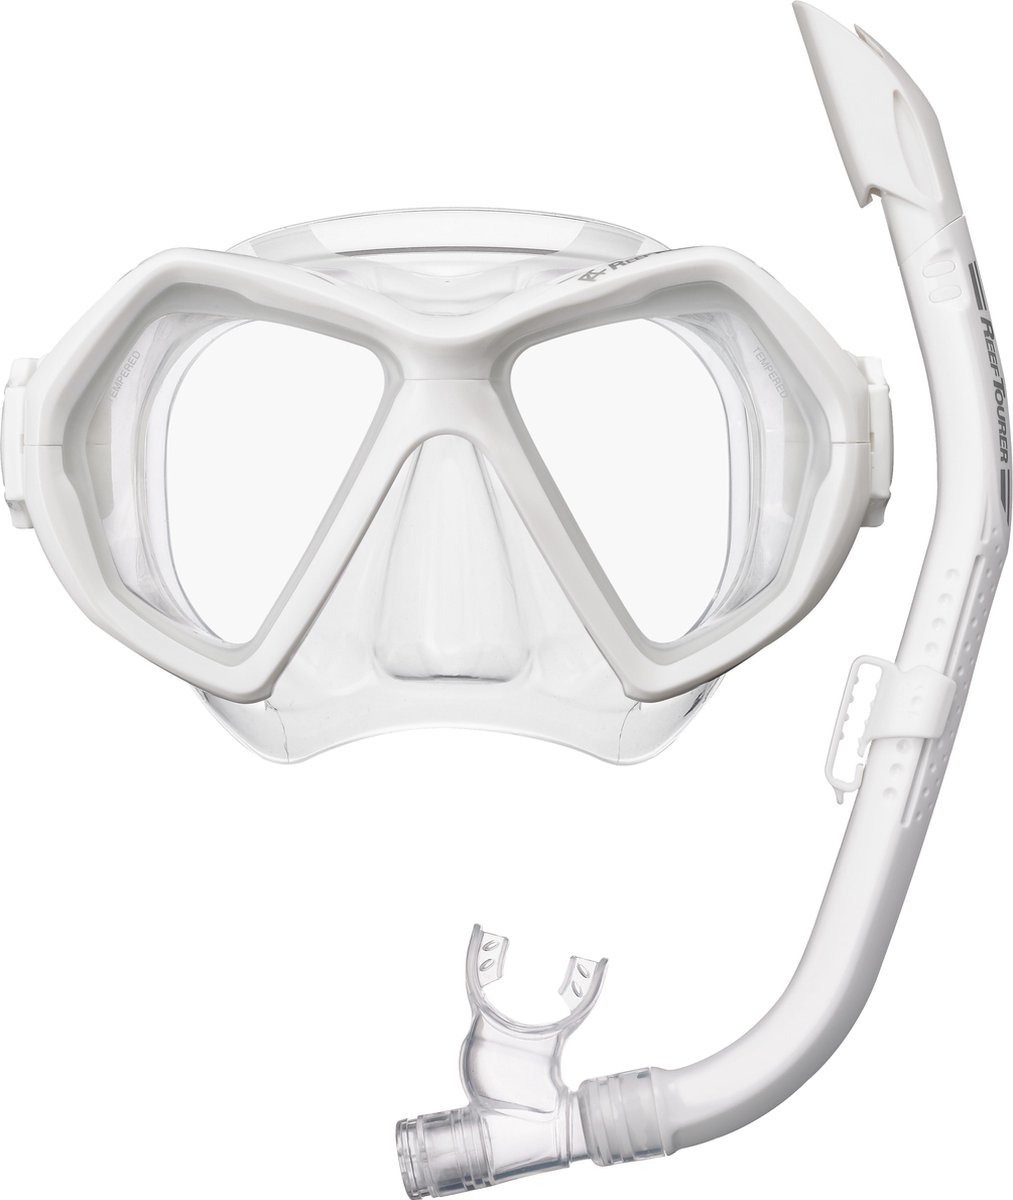 ReefTourer- RC0107- COMBO- Snorkelmasker- Snorkelset - wit - ReefTourer